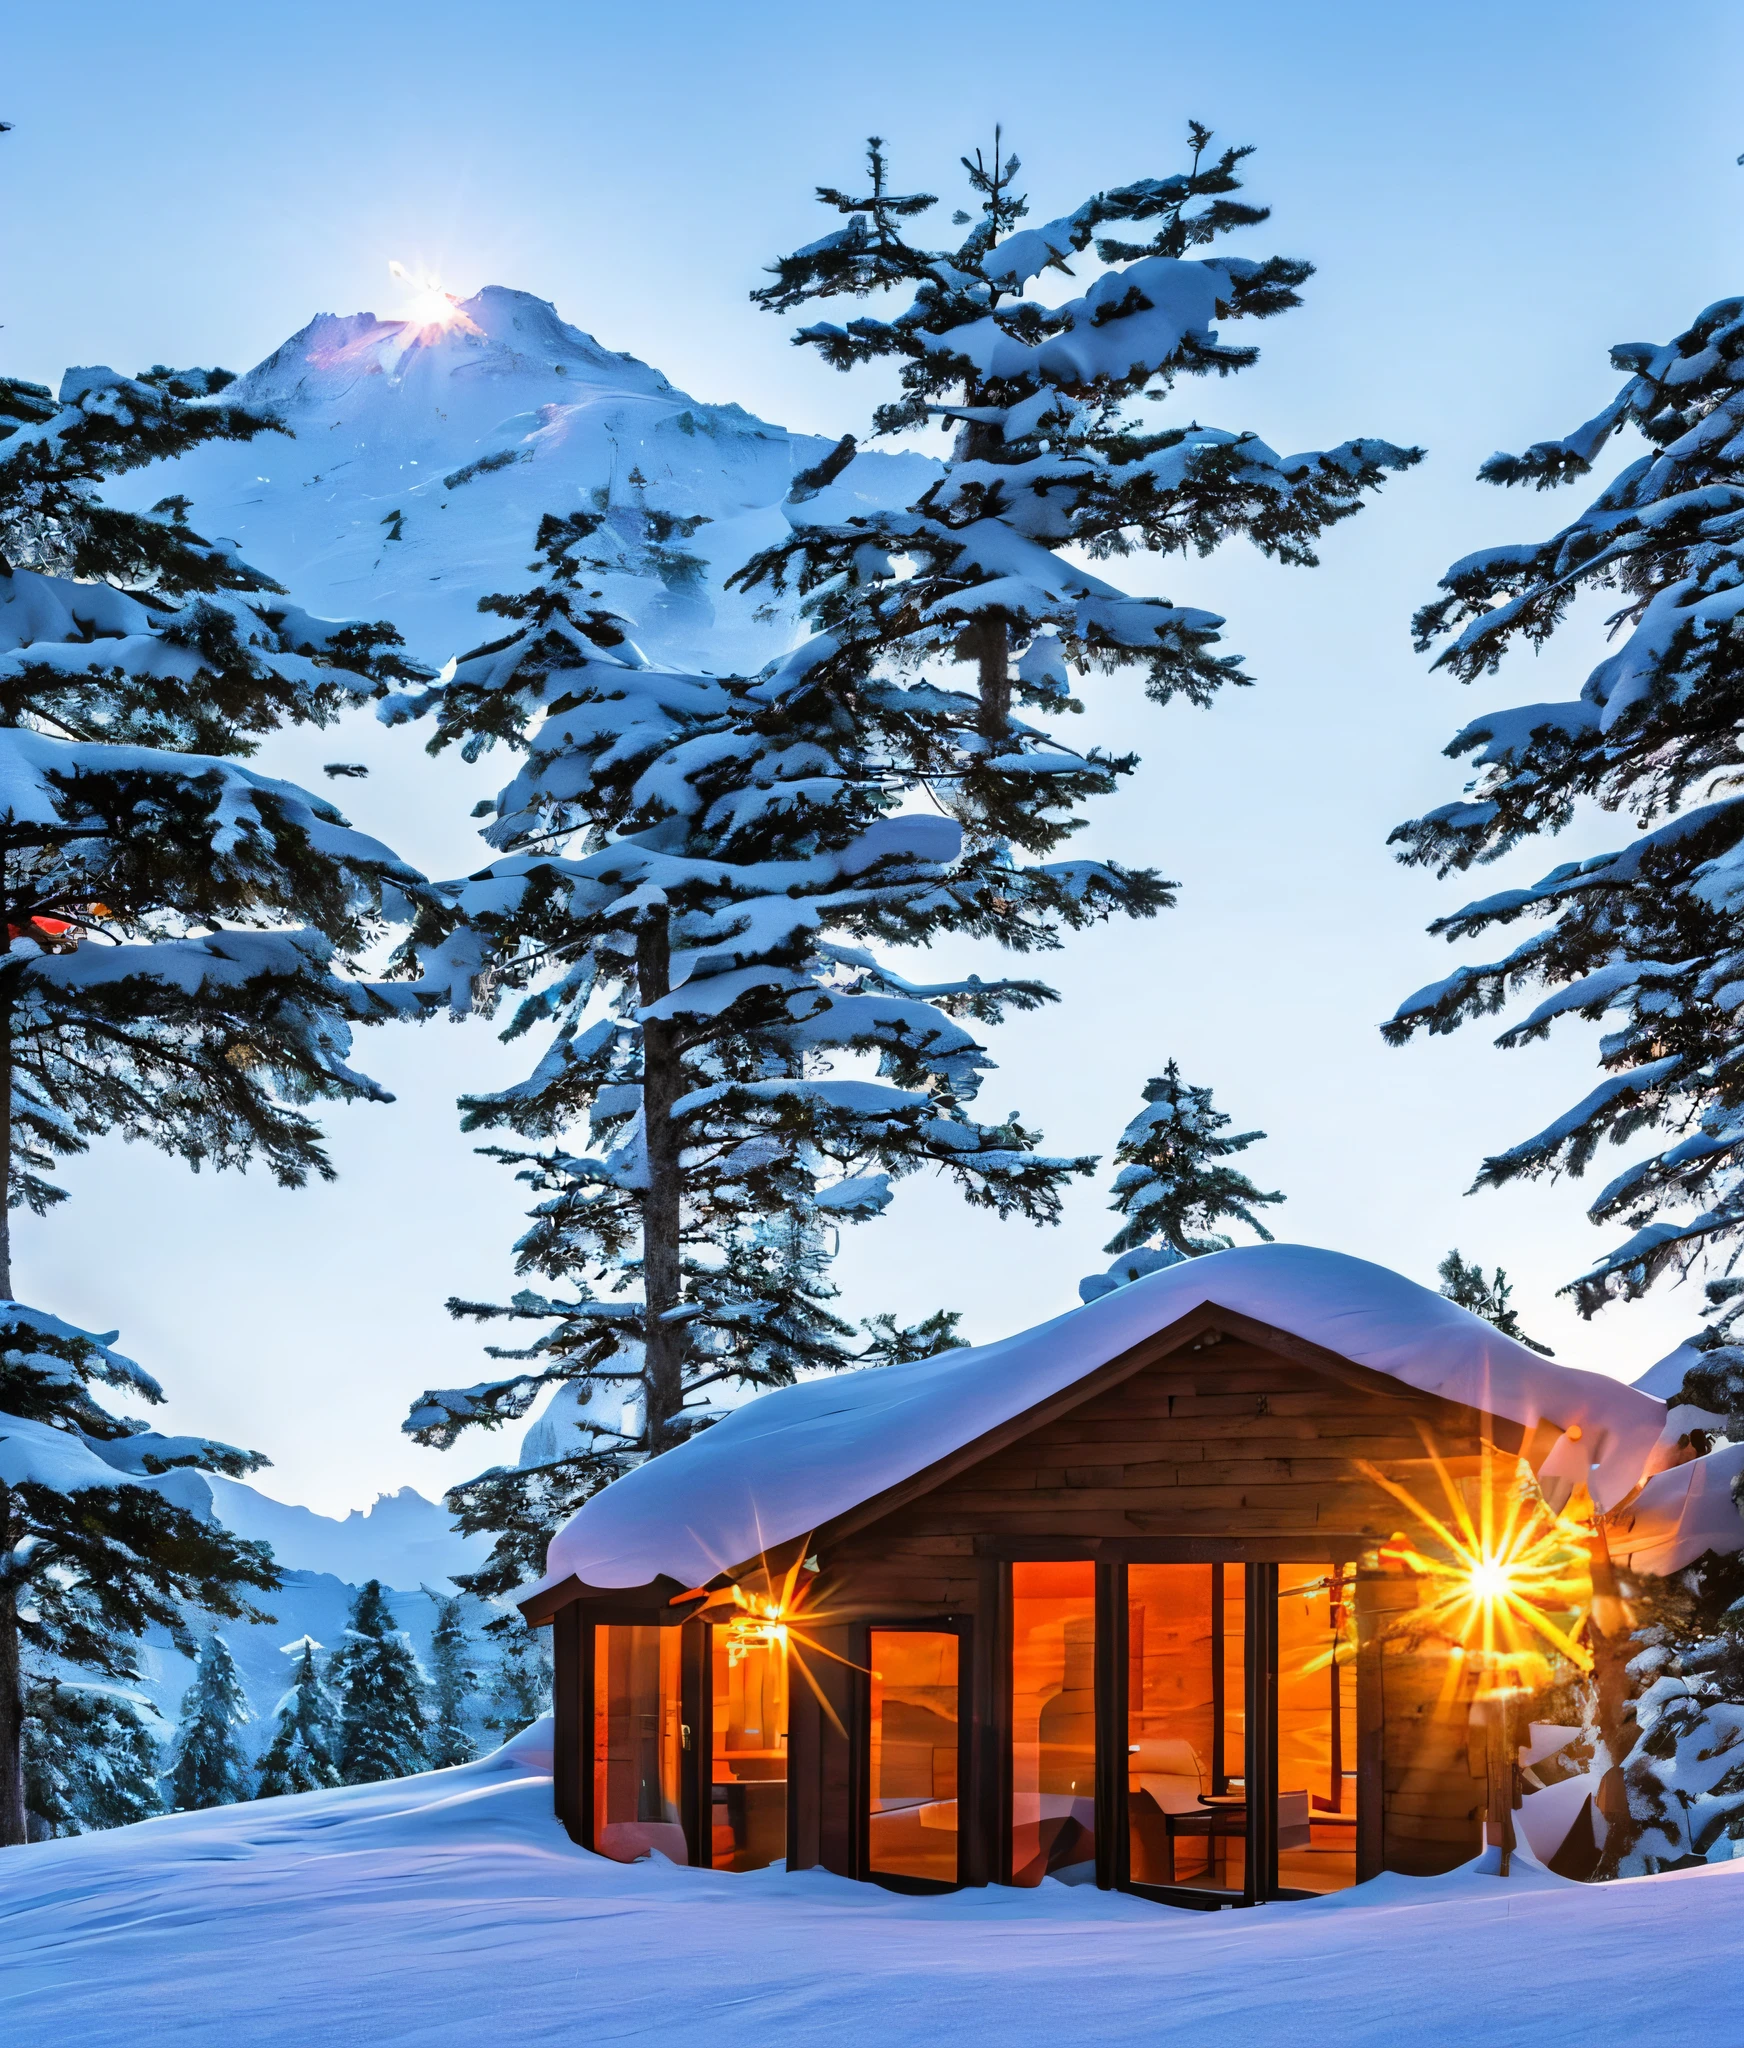 Crea una cabaña al pie de una montaña con una hermosa puesta de sol, en la cima de las montañas nevadas, varios árboles alrededor